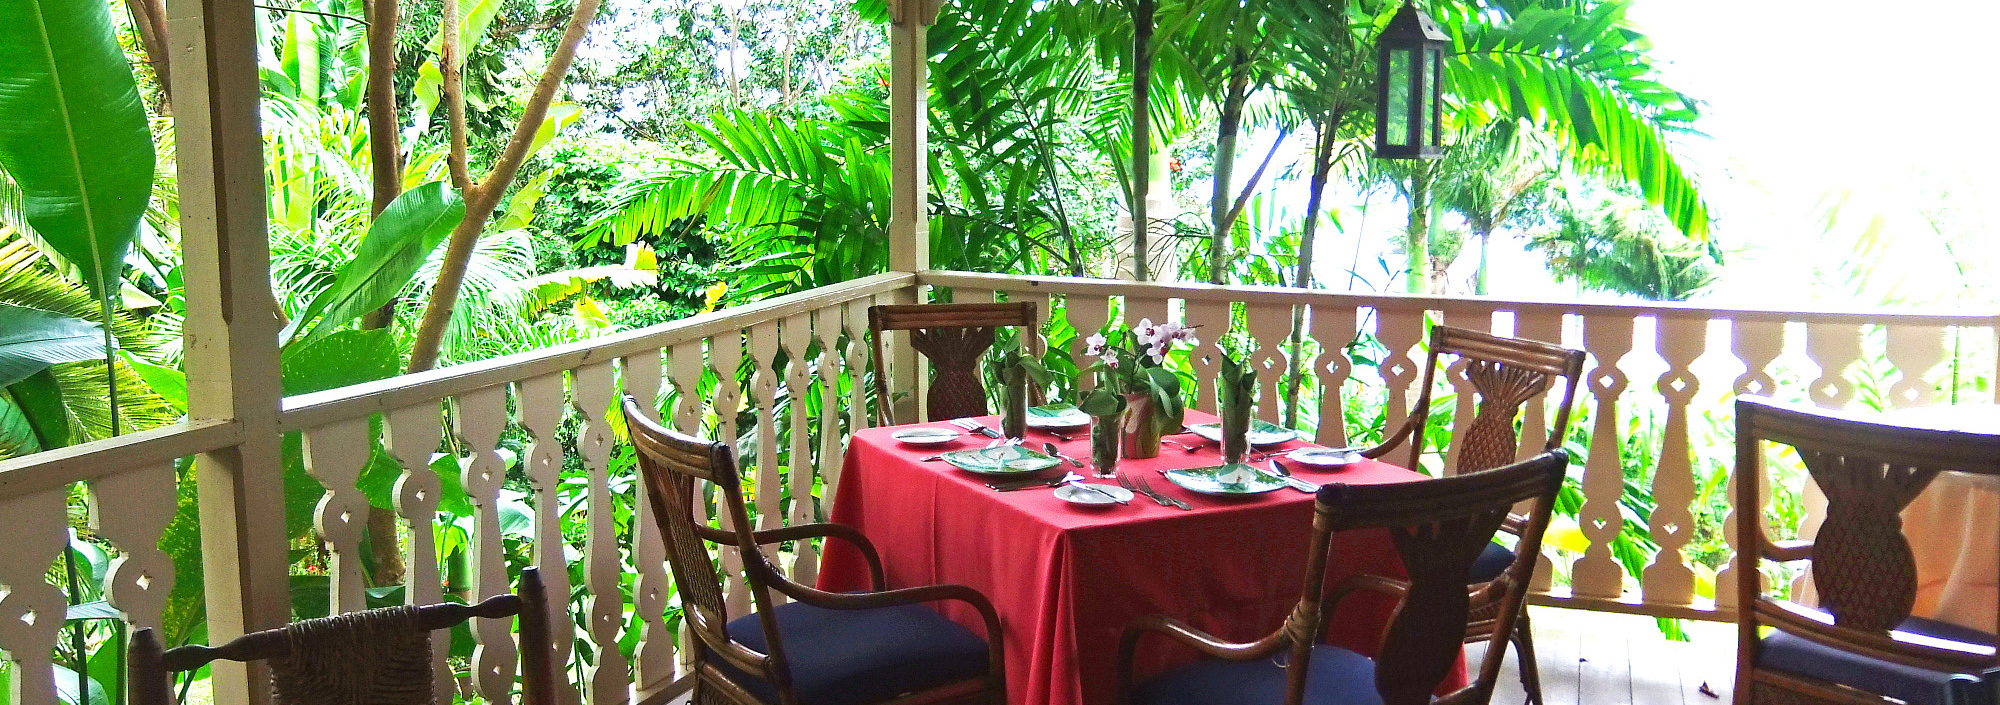 Restaurant im tropischen Ambiente auf Saint Lucia